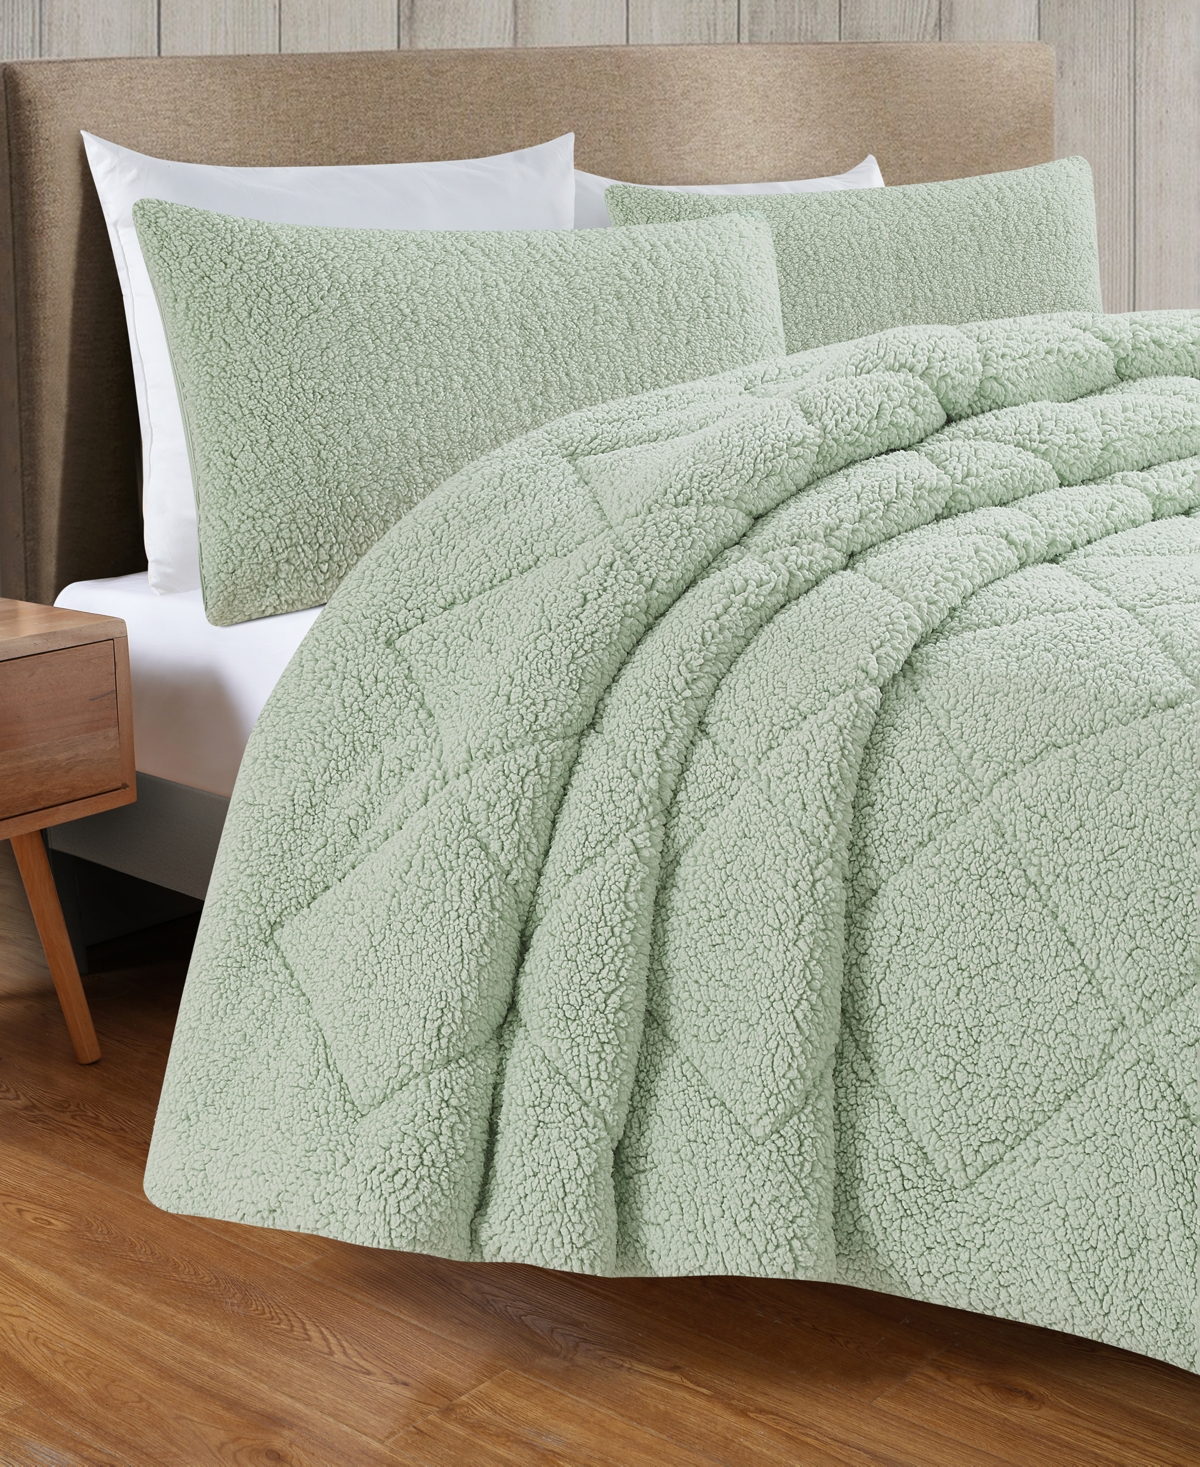 Videri Home Cozy Sherpa 3 Piece Comforter Set, Full-queen In Green